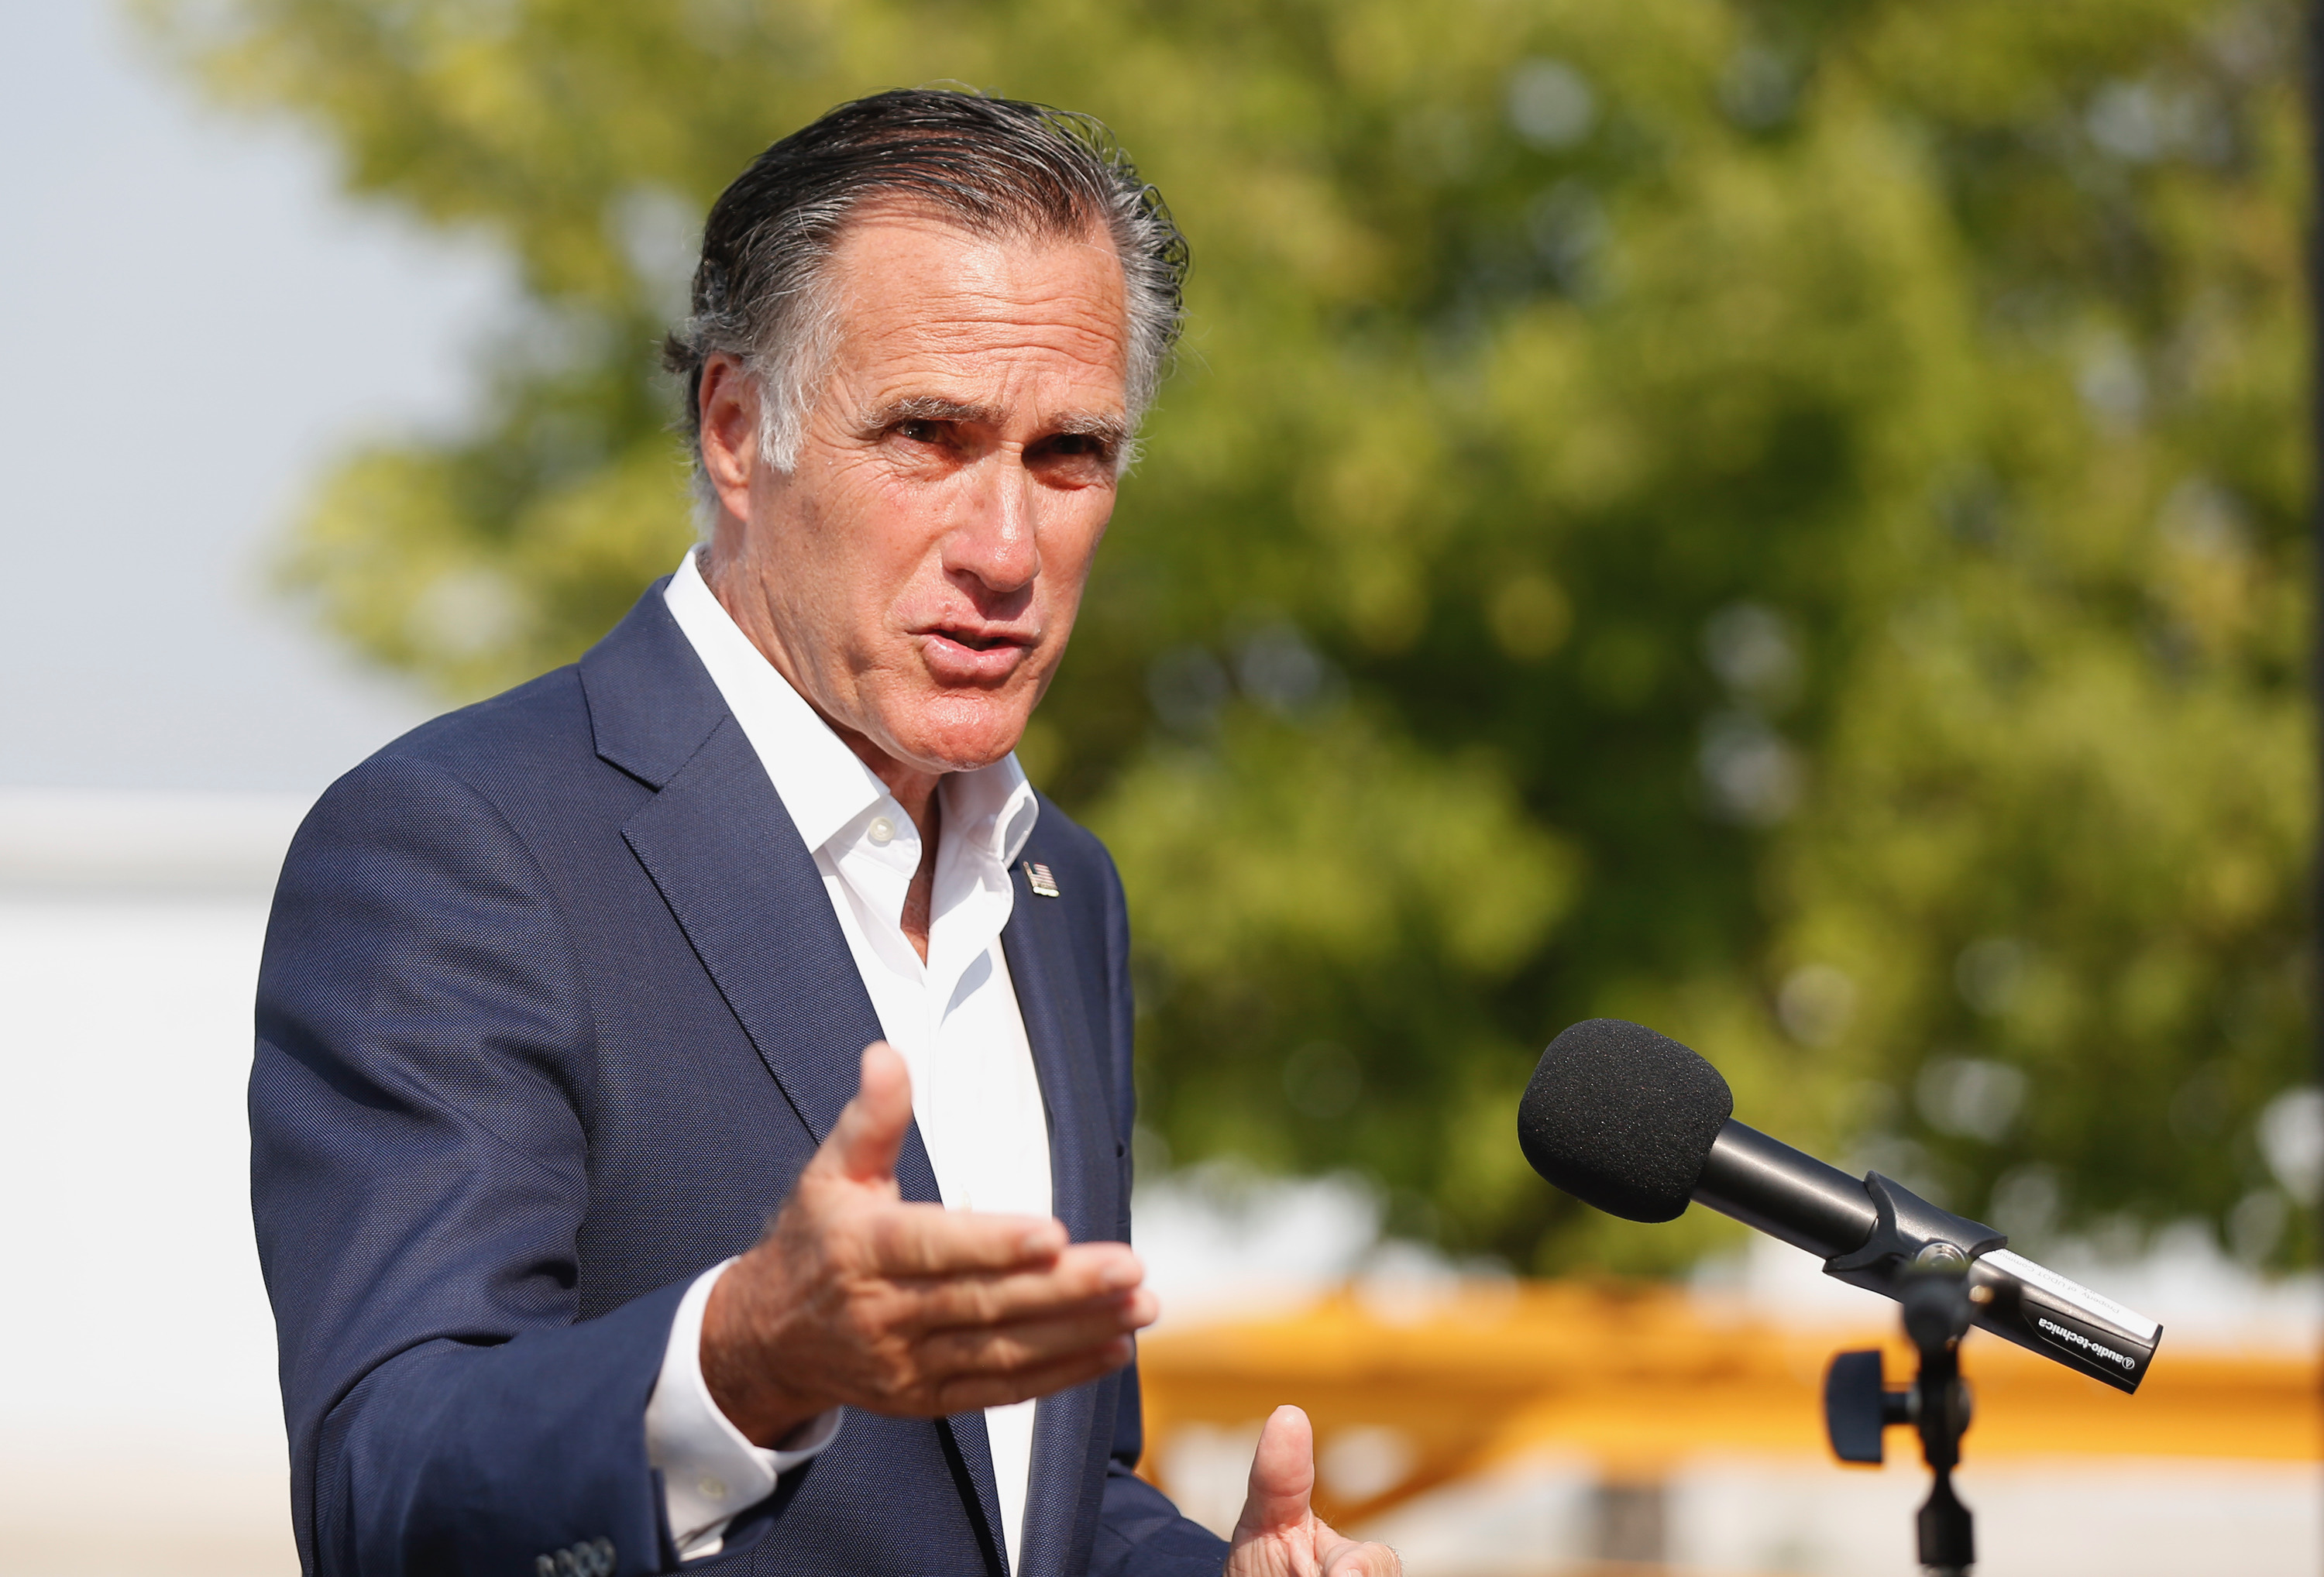 Sen. Mitt Romney, R-Utah, speaks in Salt Lake City on Thursday, Aug. 26, 2021.